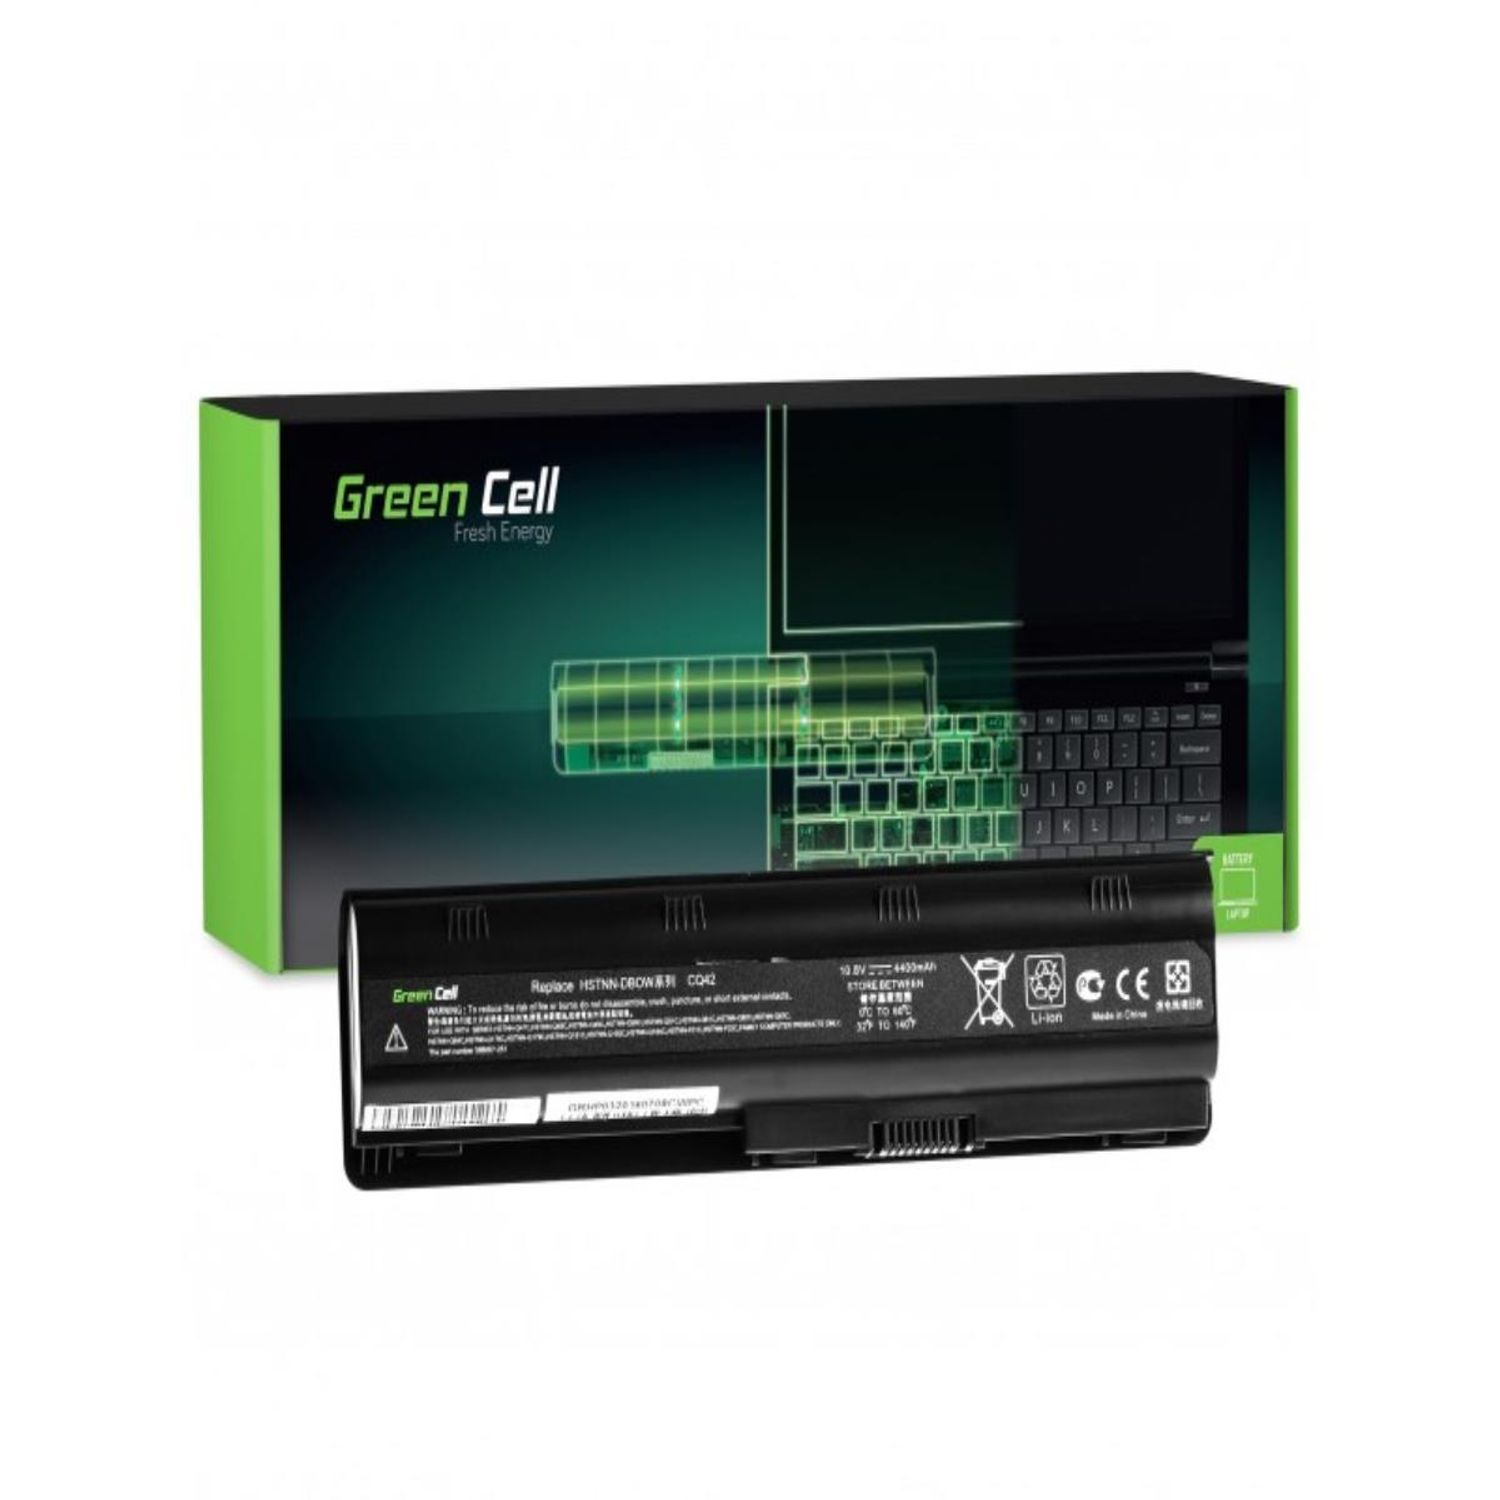 Akku Laptop CELL 10.8 für Volt, mAh 650 Batterien Lithium-Ionen-Akku MU06 / 635 Akku, HP GREEN